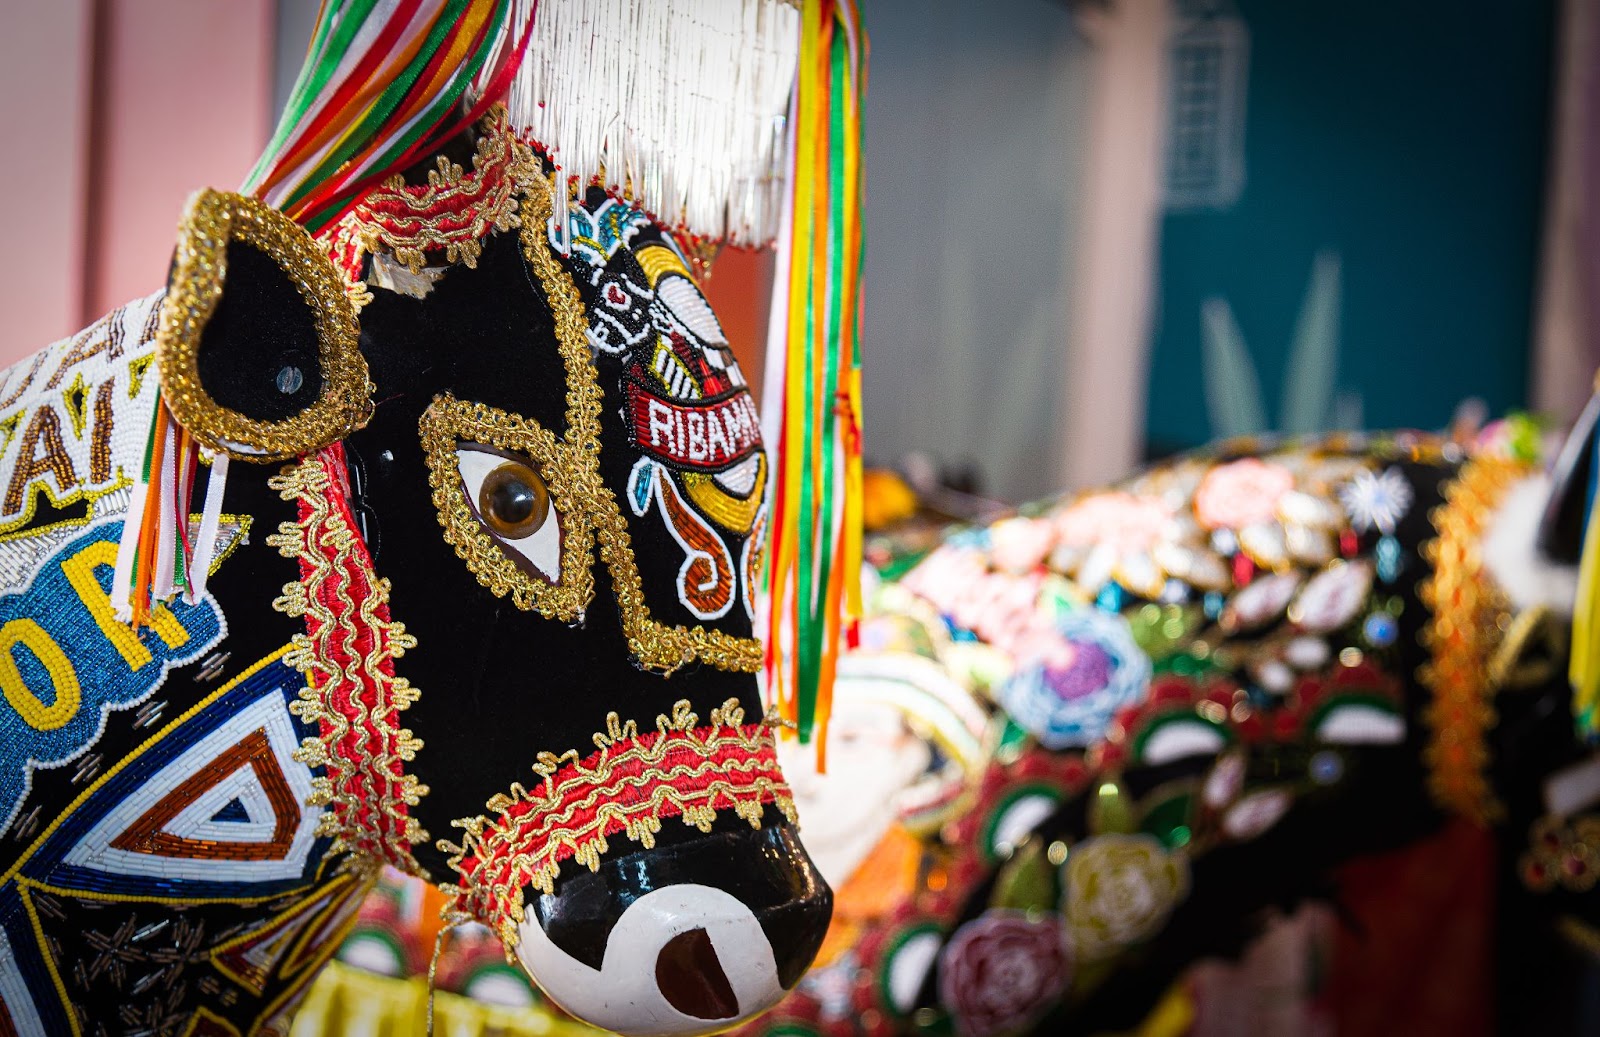 Esculturas de papelão usadas nas celebrações de bumba meu boi, no Maranhão. Elas representam bois ricamente enfeitados com lantejoulas, fitas coloridas, rendas e outros adereços brilhantes.